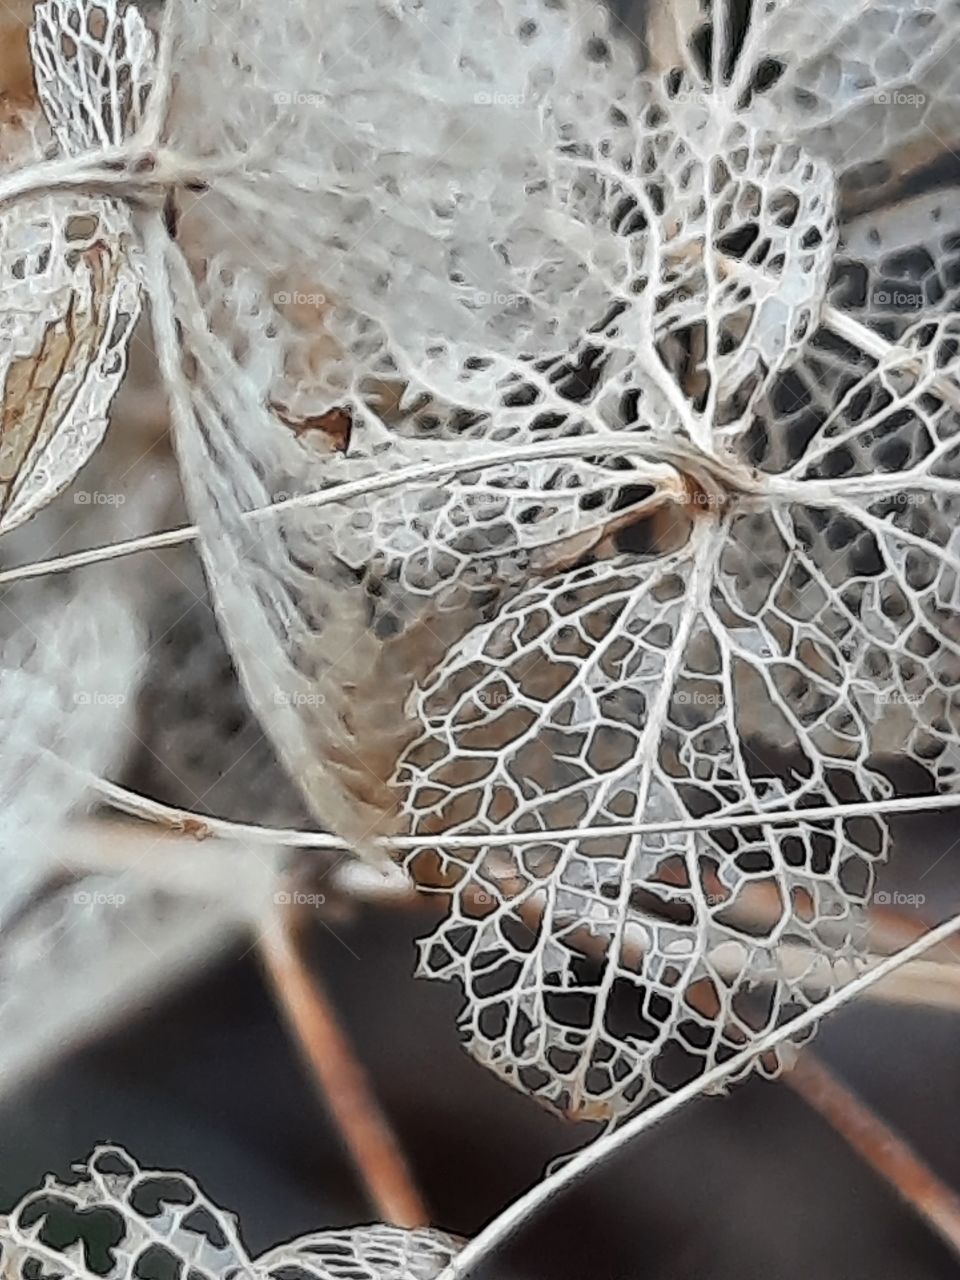 autumn garden - lose-up of dried hydrangea flower